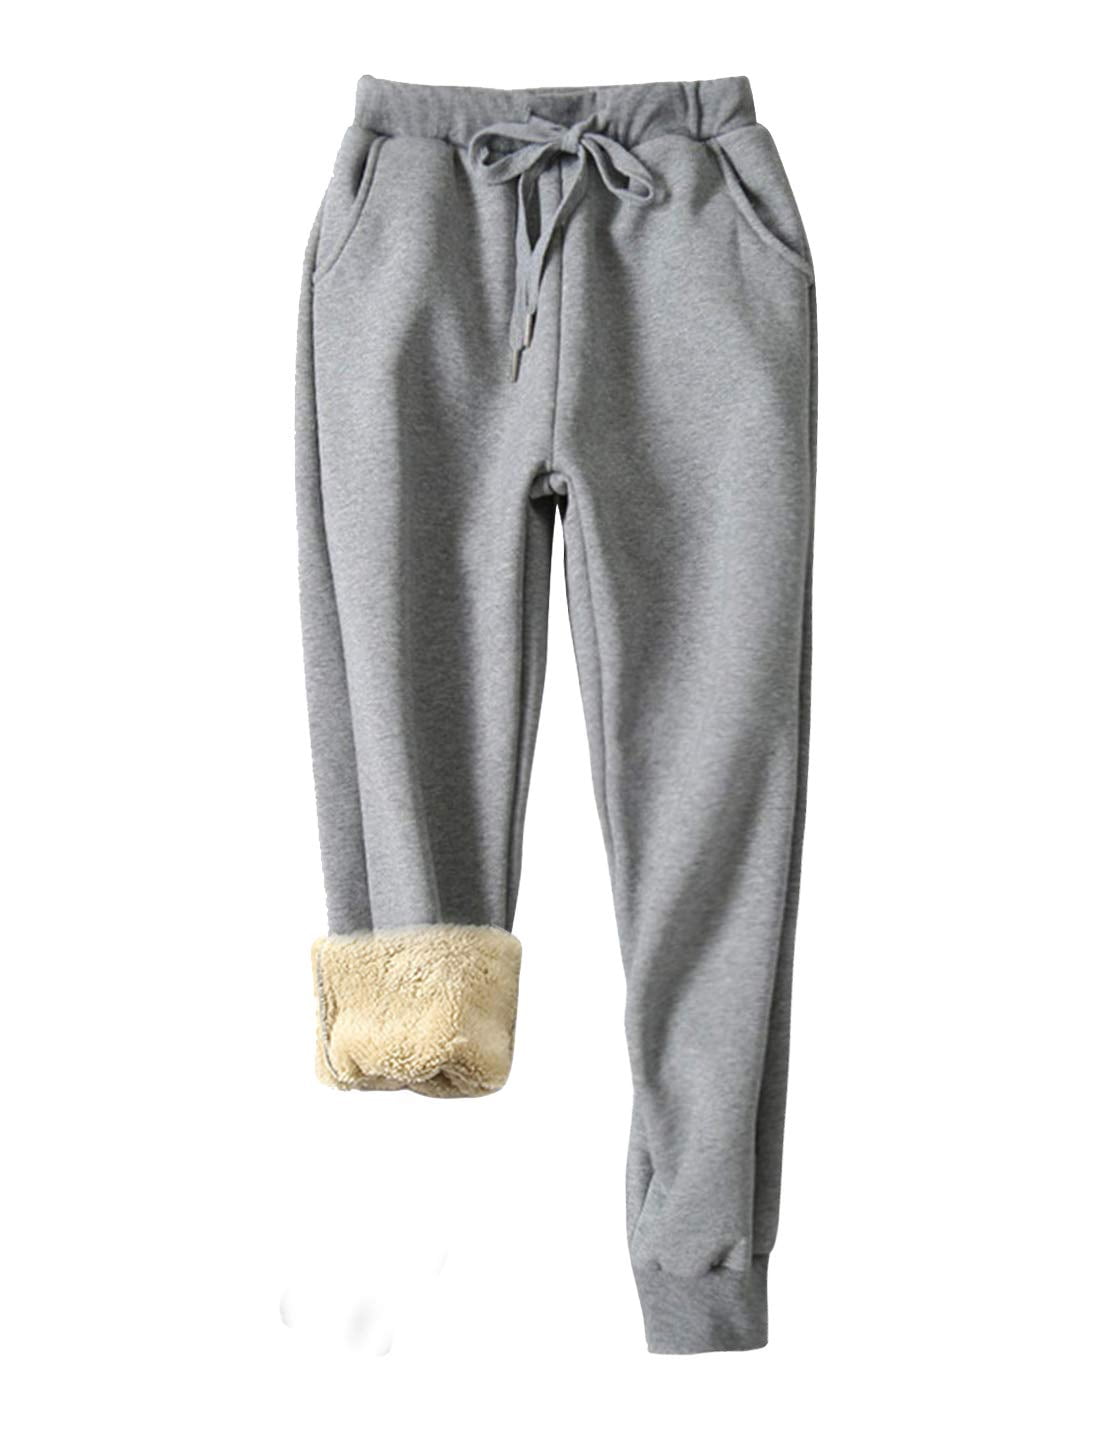 Women Winter Warm Sherpa Fleece Pants Fur Lined Elastic Thick